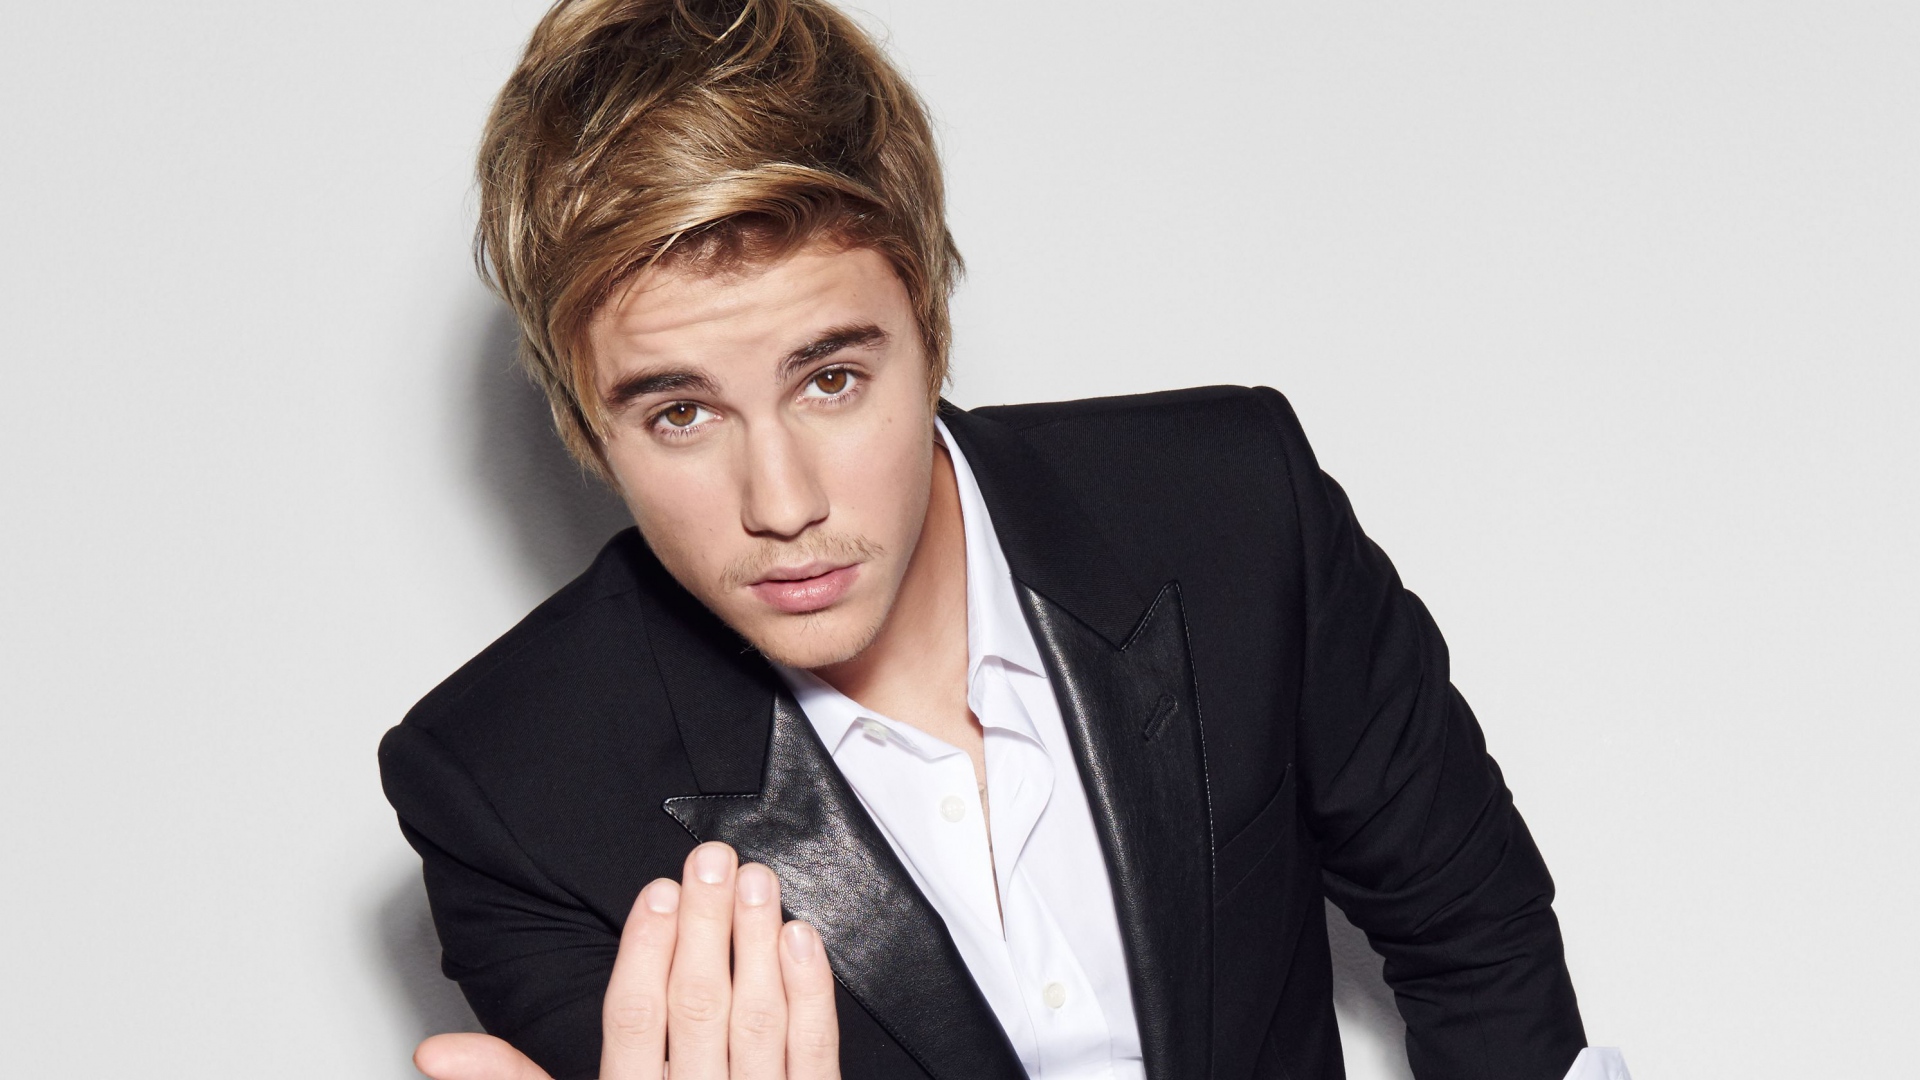 Fondos De Justin Bieber Wallpapers Y Fotos De Justin Bieber